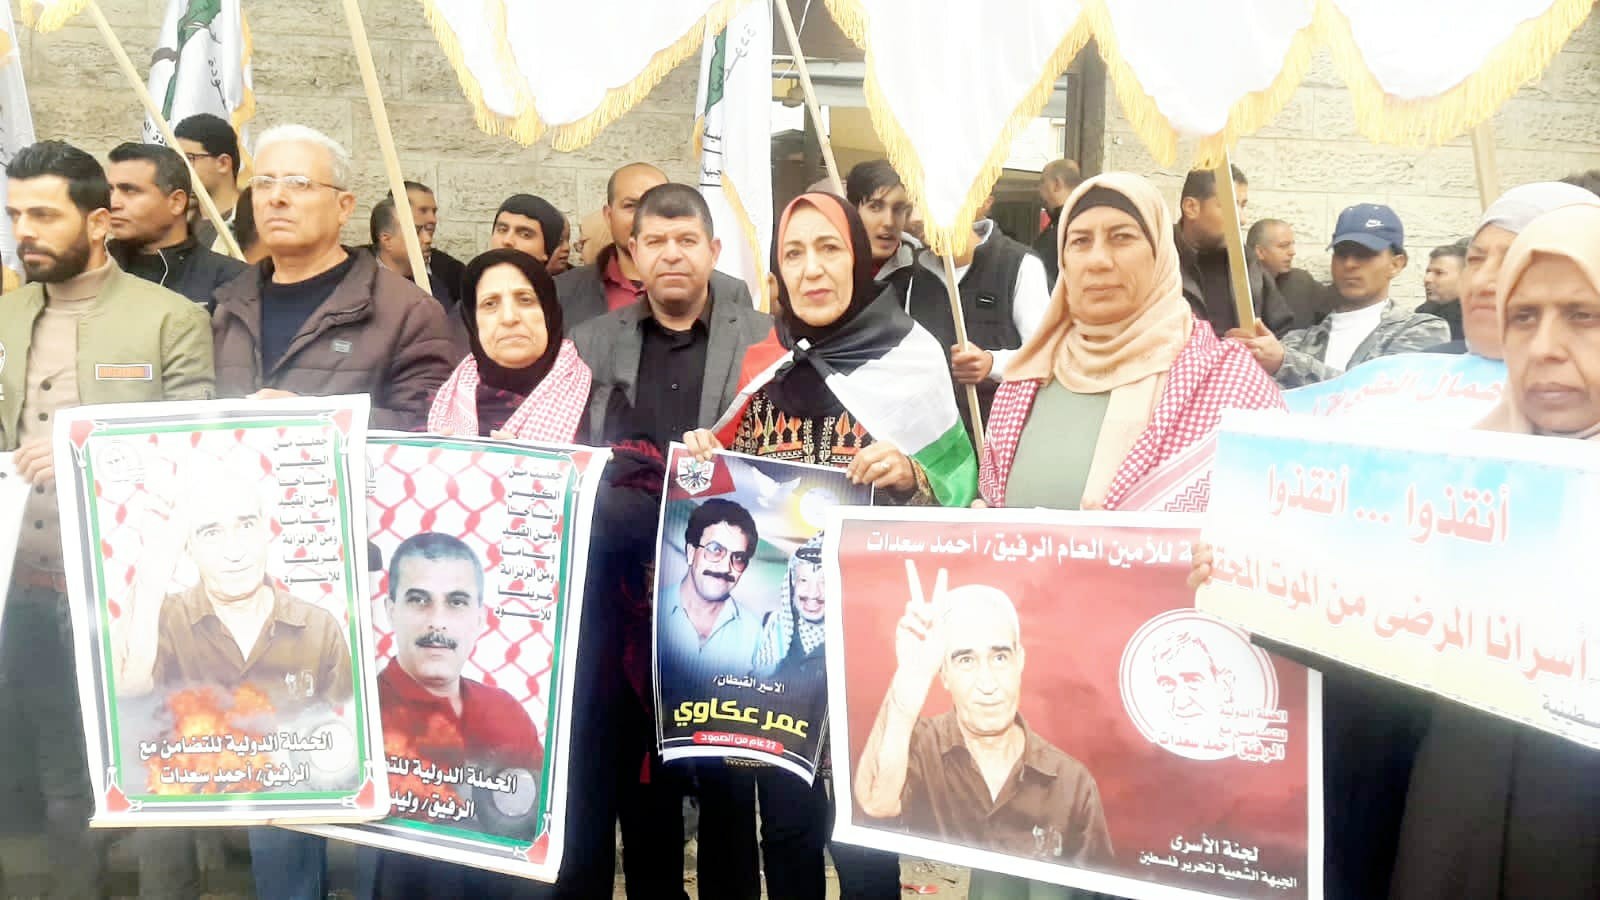 التجمع الفلسطيني للوطن و الشتات يشارك في الوقفة بإسترداد جثامين الشهداء المحتجزة لدى الاحتلال 1.jpg